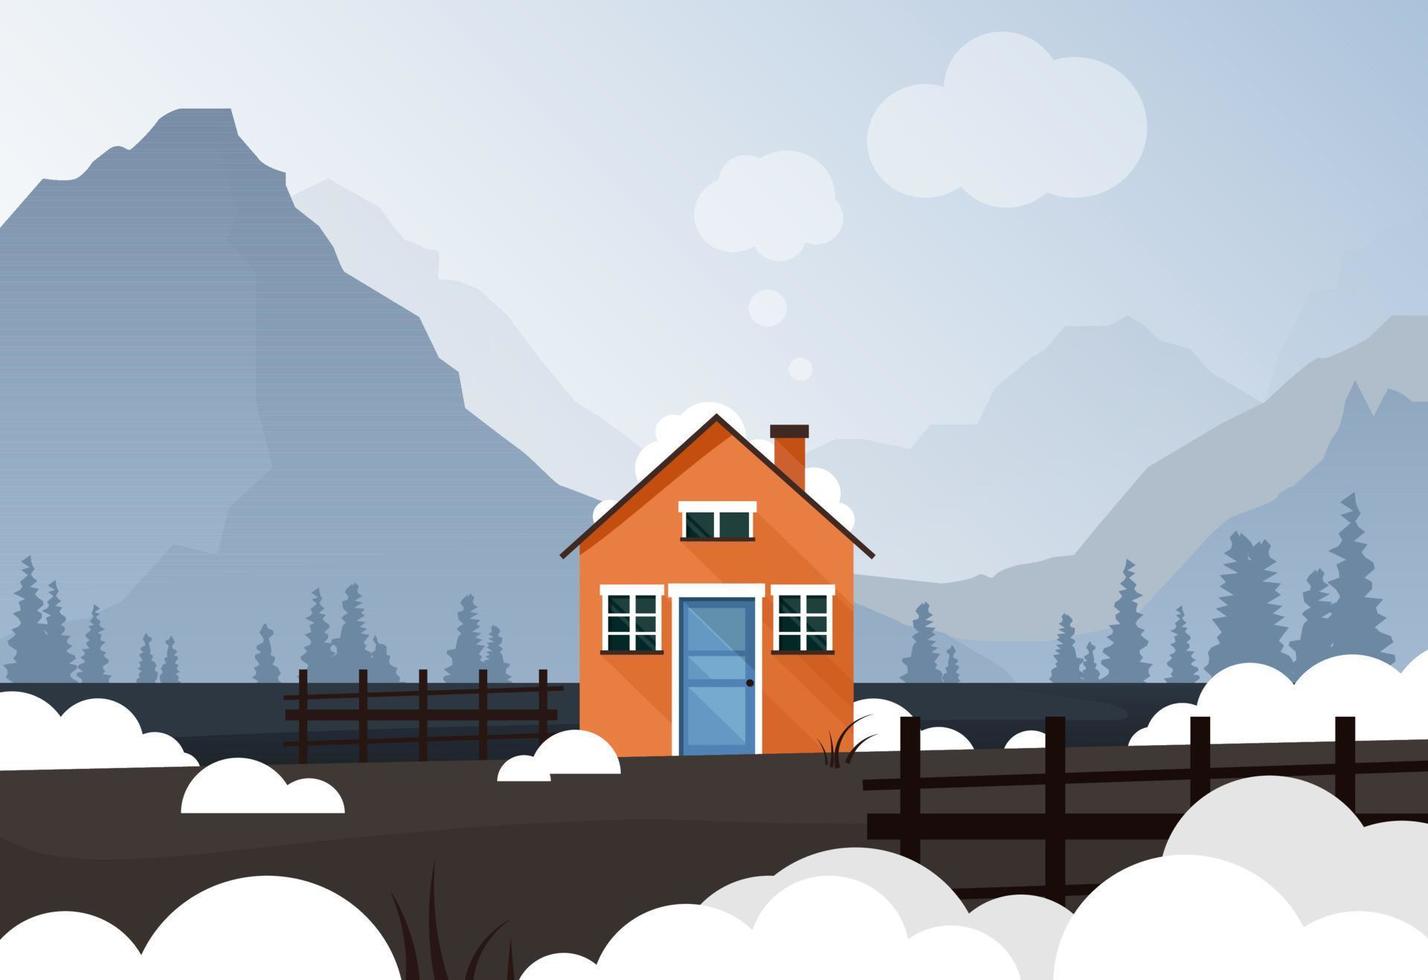 uma pequena casa laranja no estilo escandinavo fica sozinha cercada por montanhas, florestas e neve. vetor